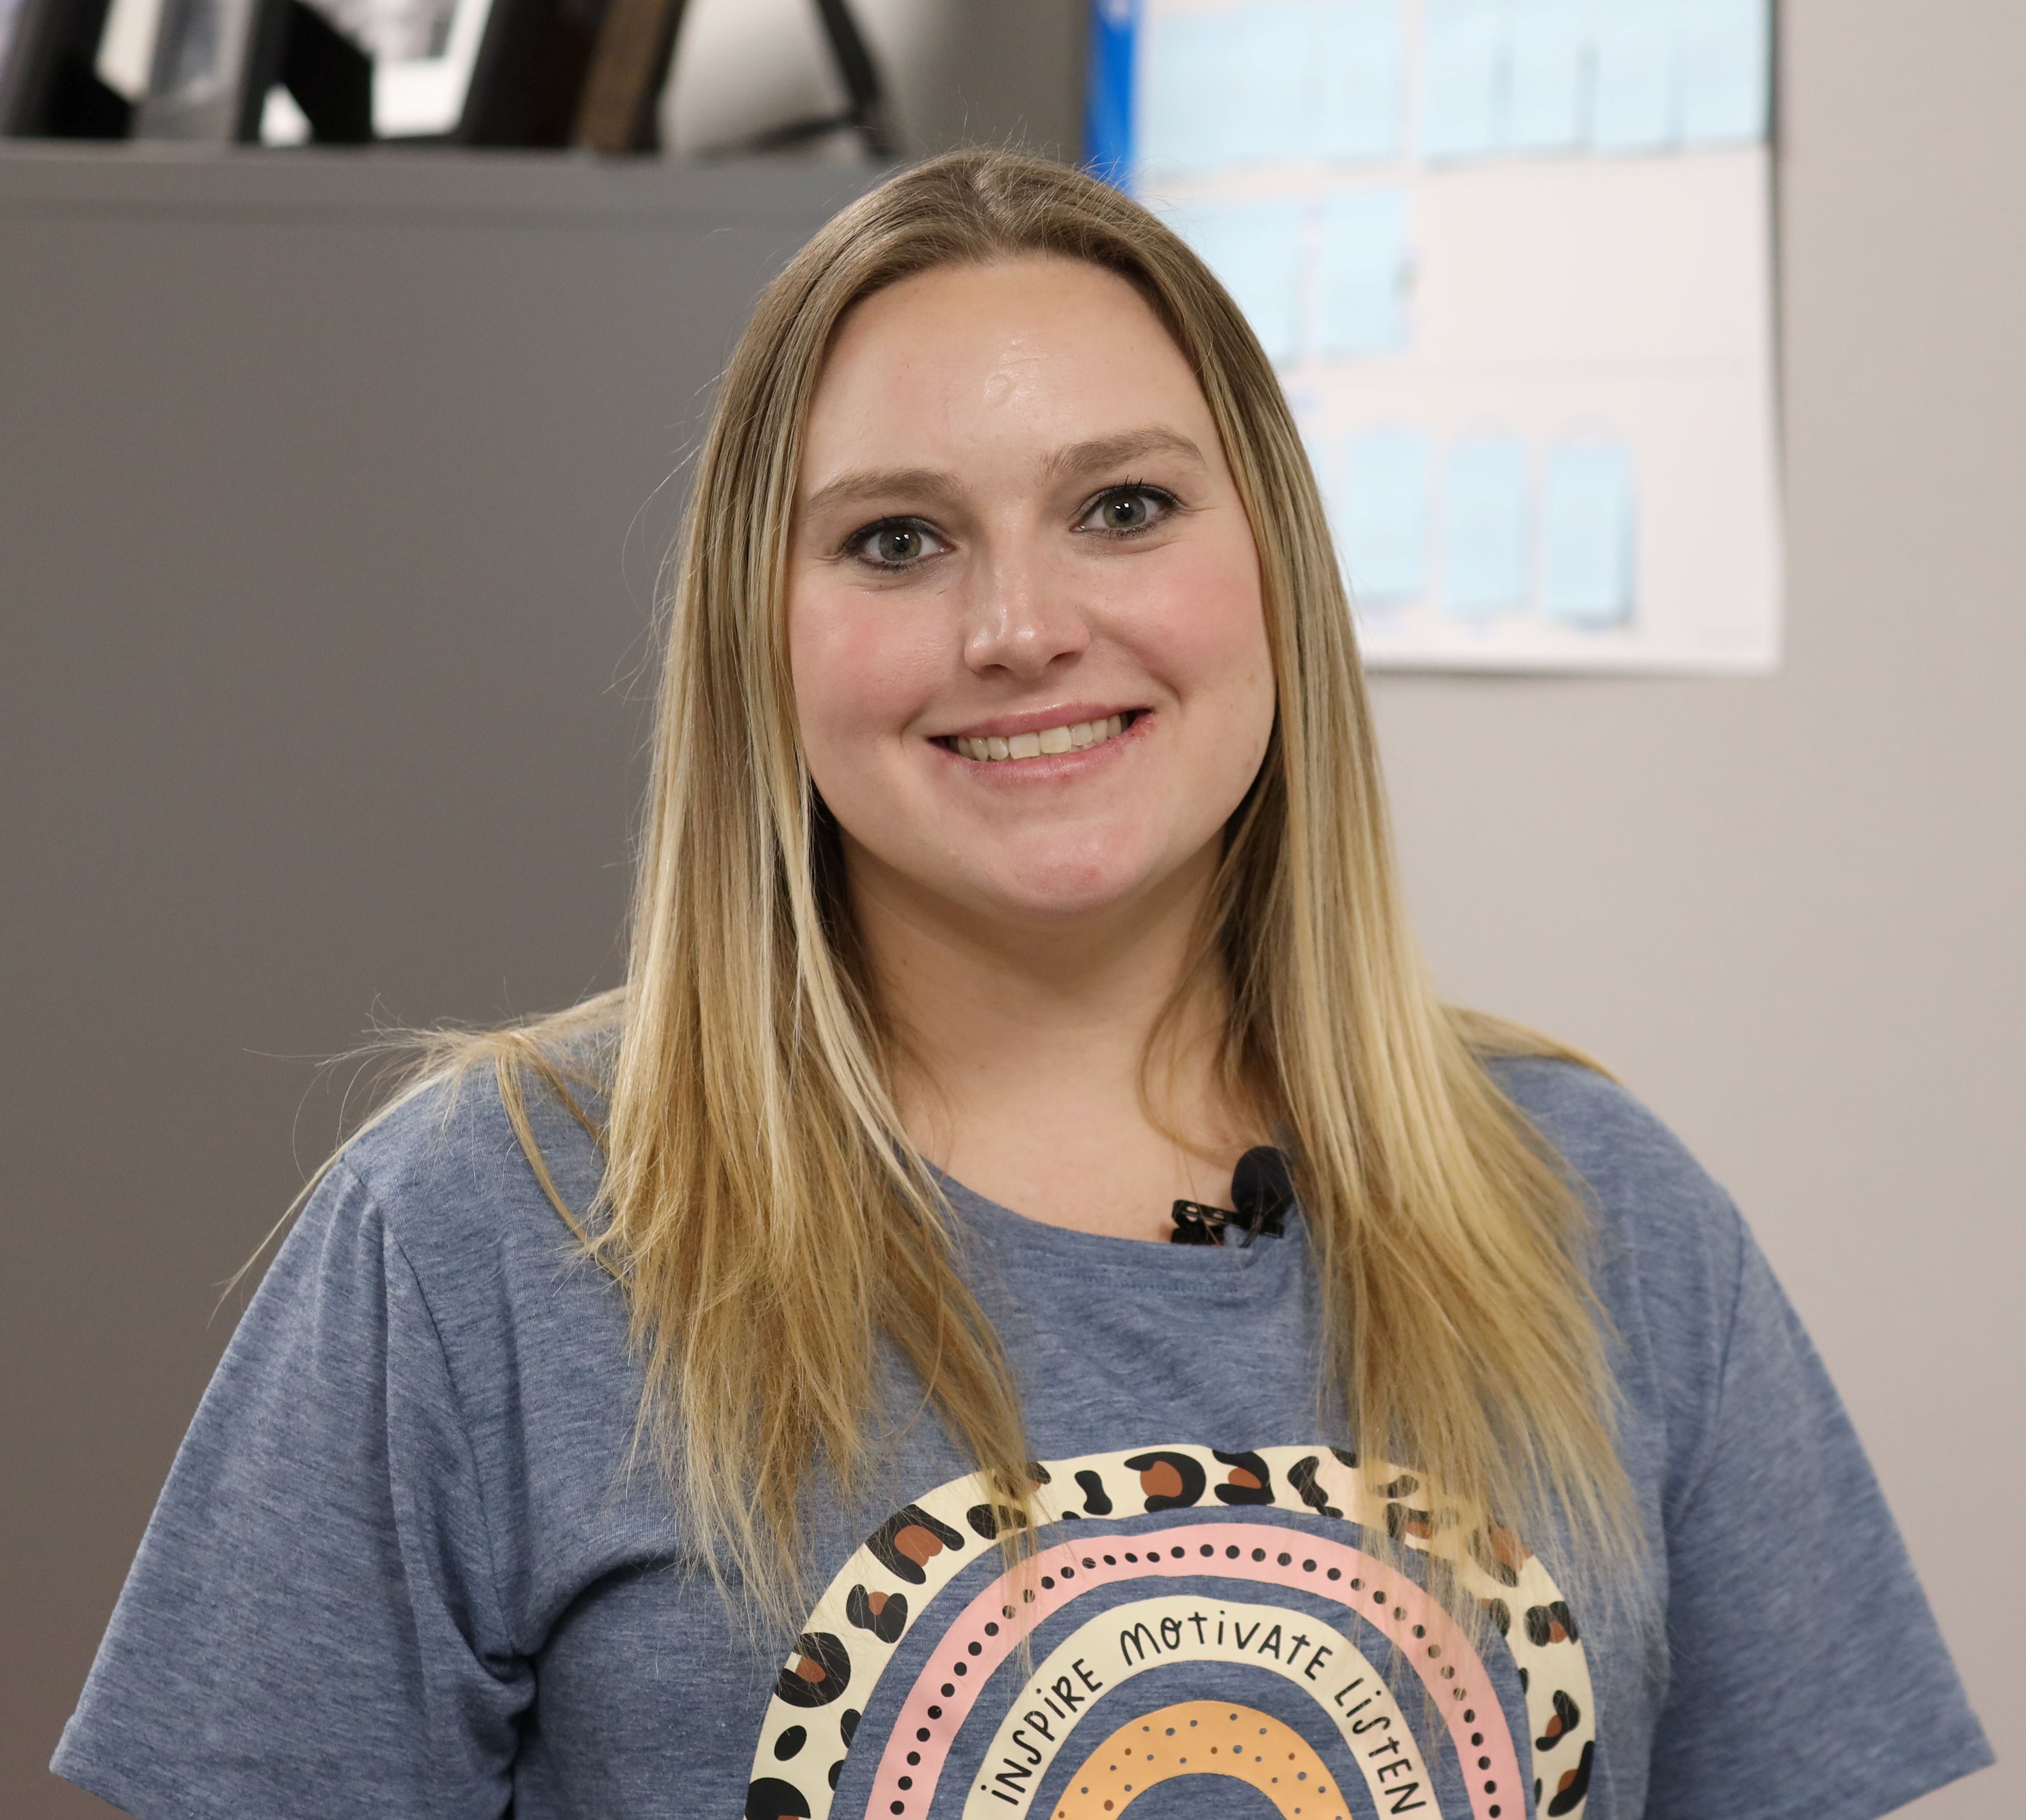 Academy of Innovation's Teacher of the Year, Sara Foley-Teague smiling.